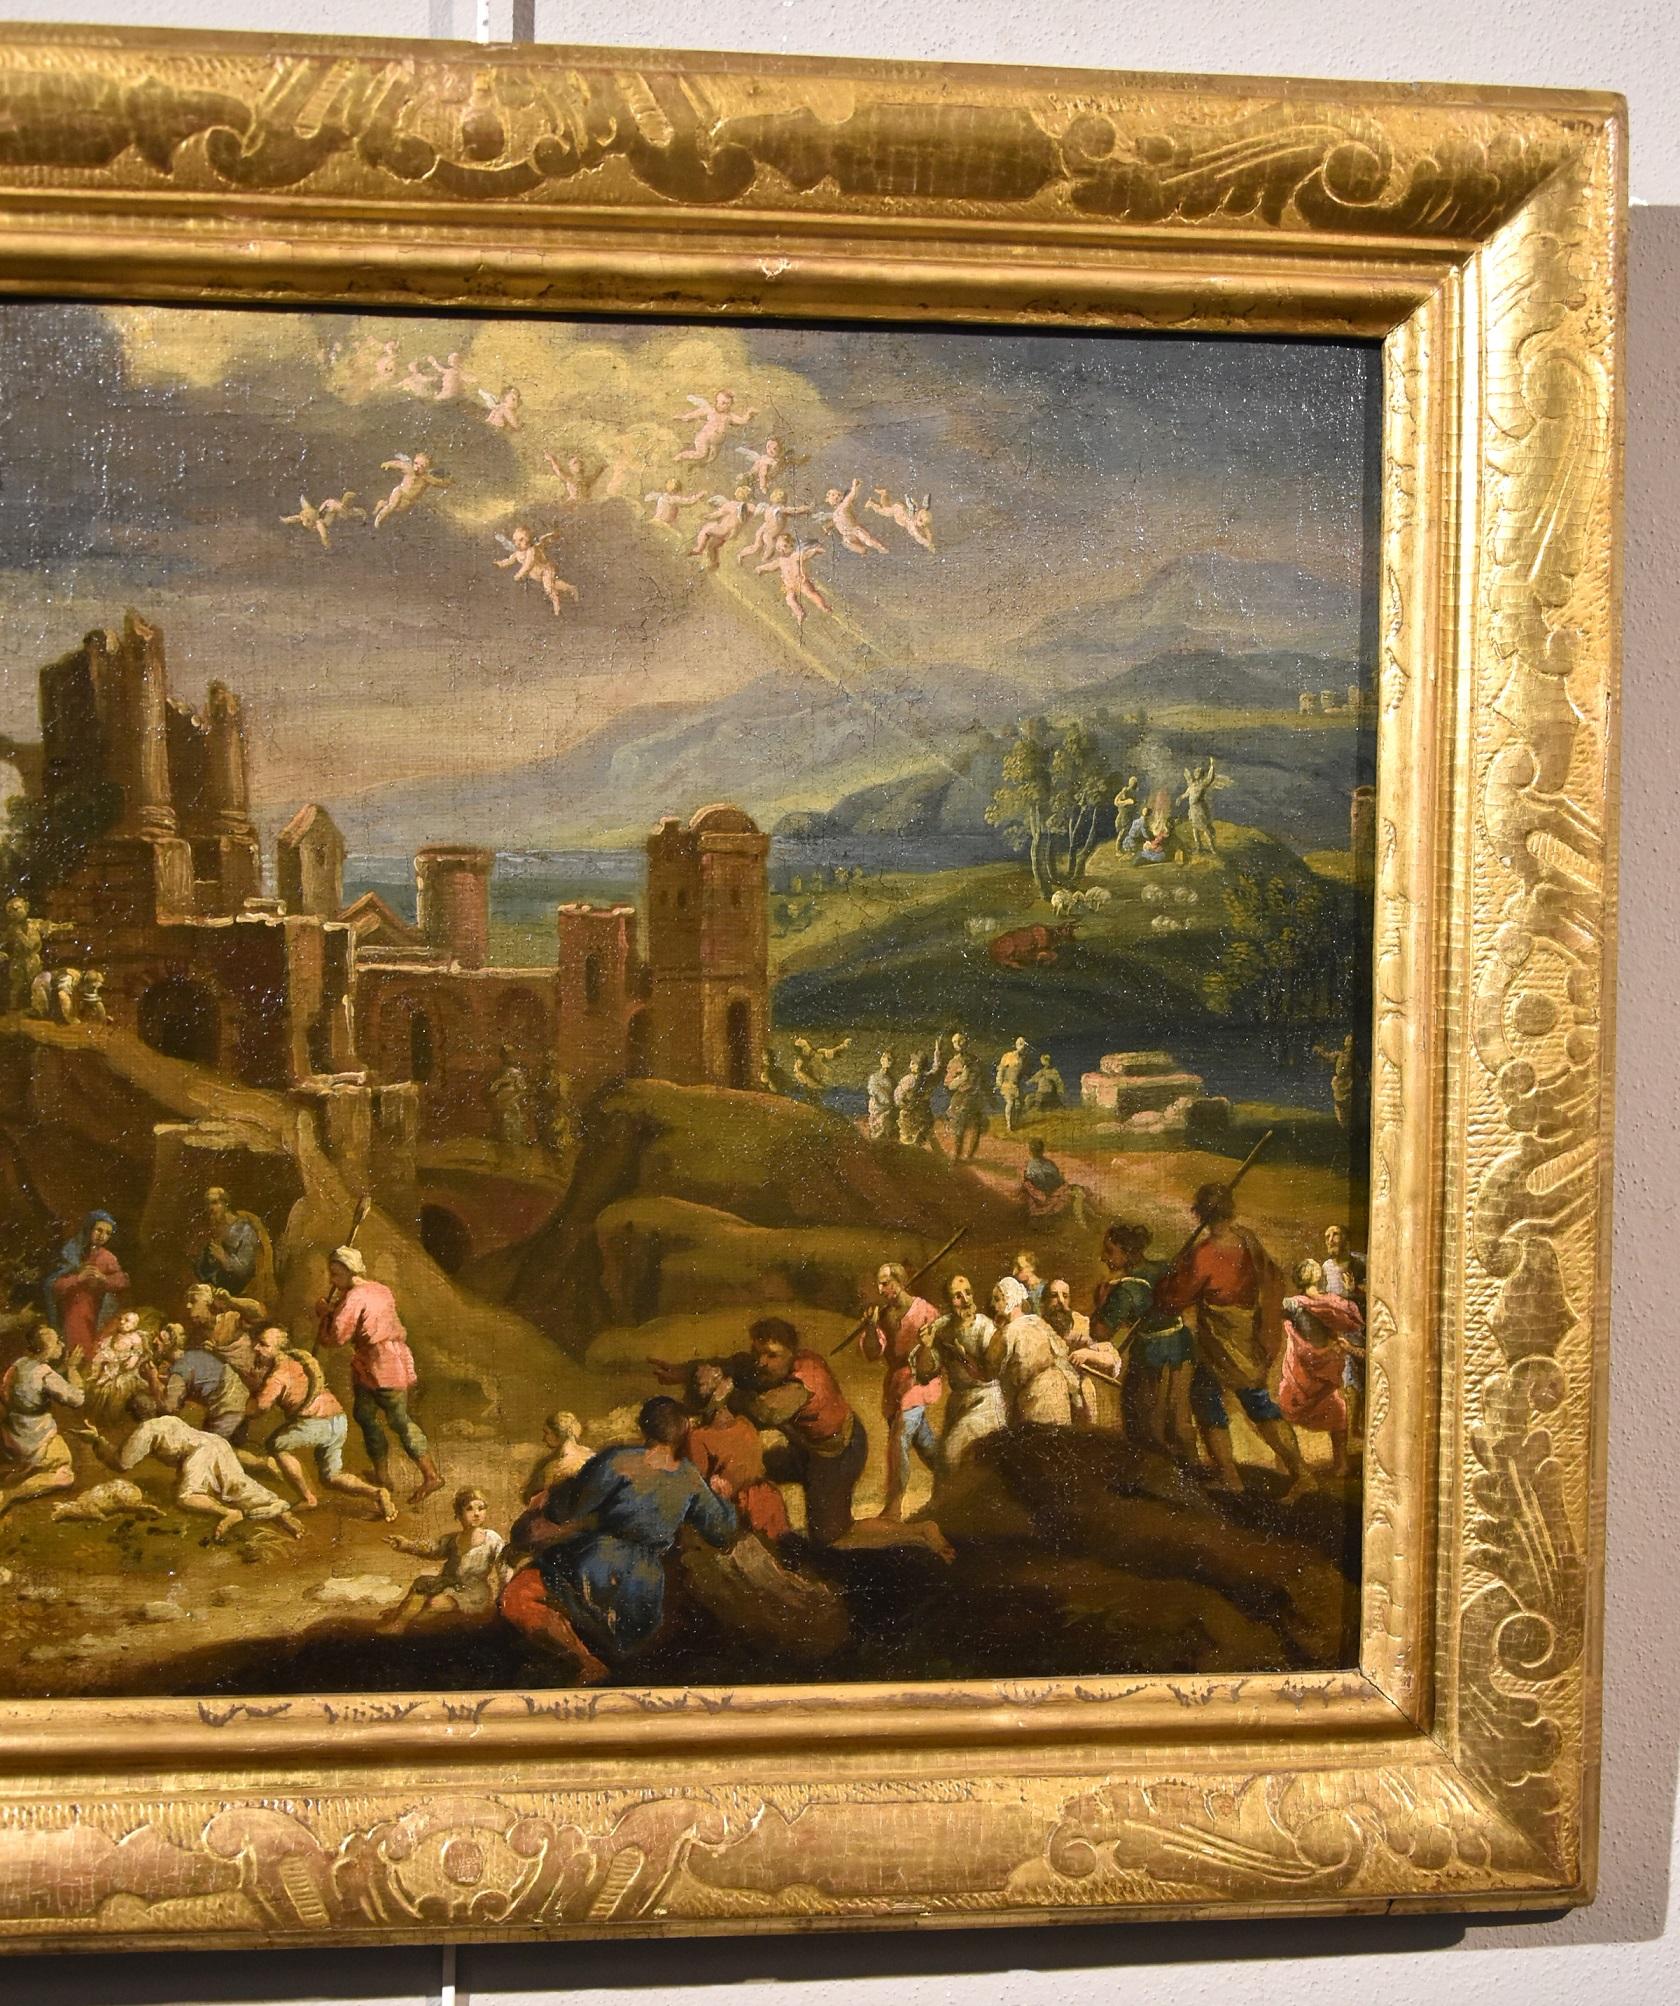 Landschaft, religiöse Malerei, Öl auf Leinwand, alter Meister, 17. Jahrhundert, Italien (Alte Meister), Painting, von Scipione Compagni, or Compagno (Naples, about 1624 - after 1680)